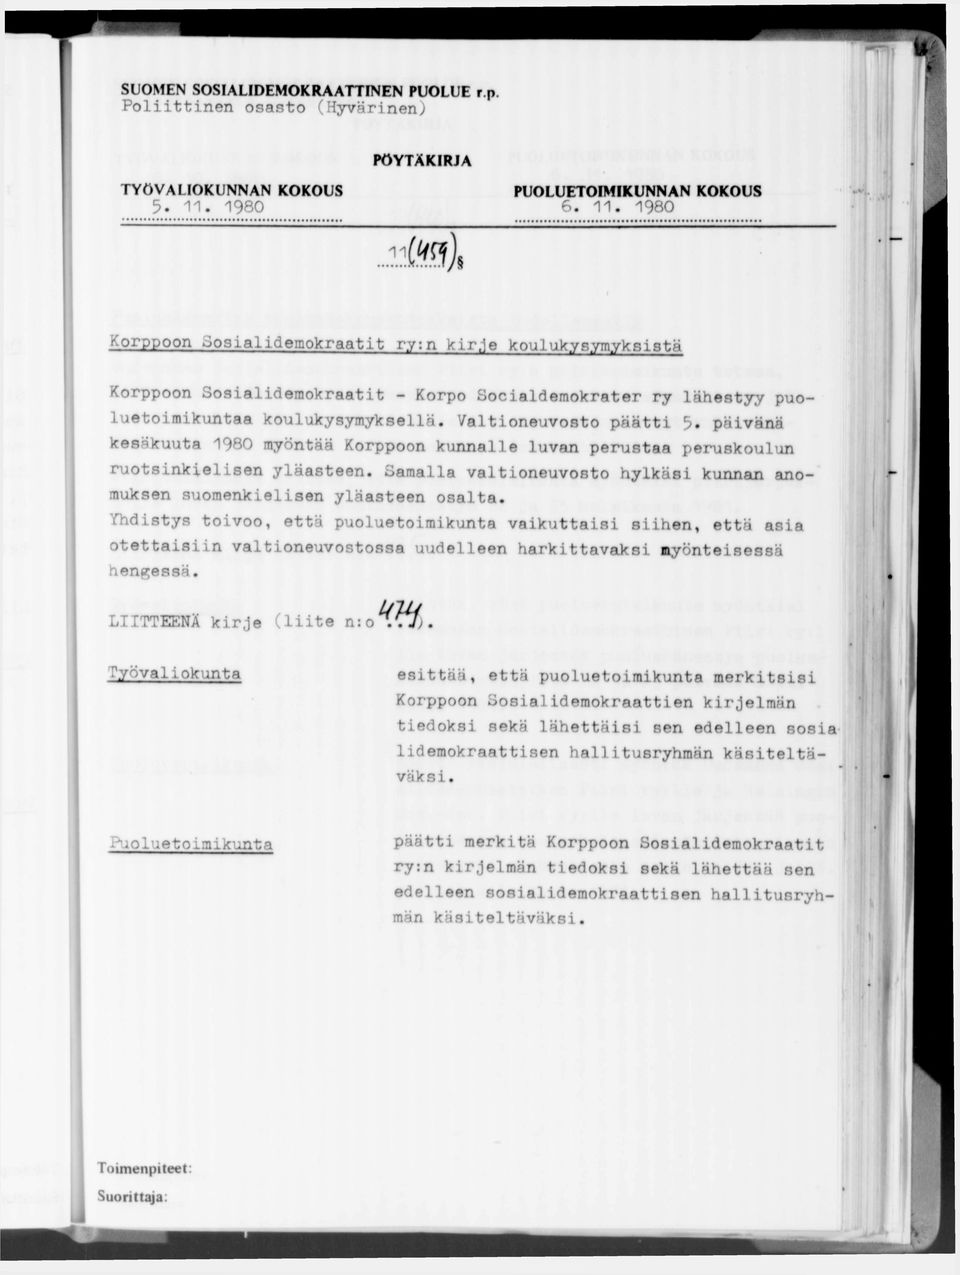 Valtioneuvosto päätti päivänä kesäkuuta 1980 myöntää Korppoon kunnalle luvan perustaa peruskoulun ruotsinkielisen yläasteen.